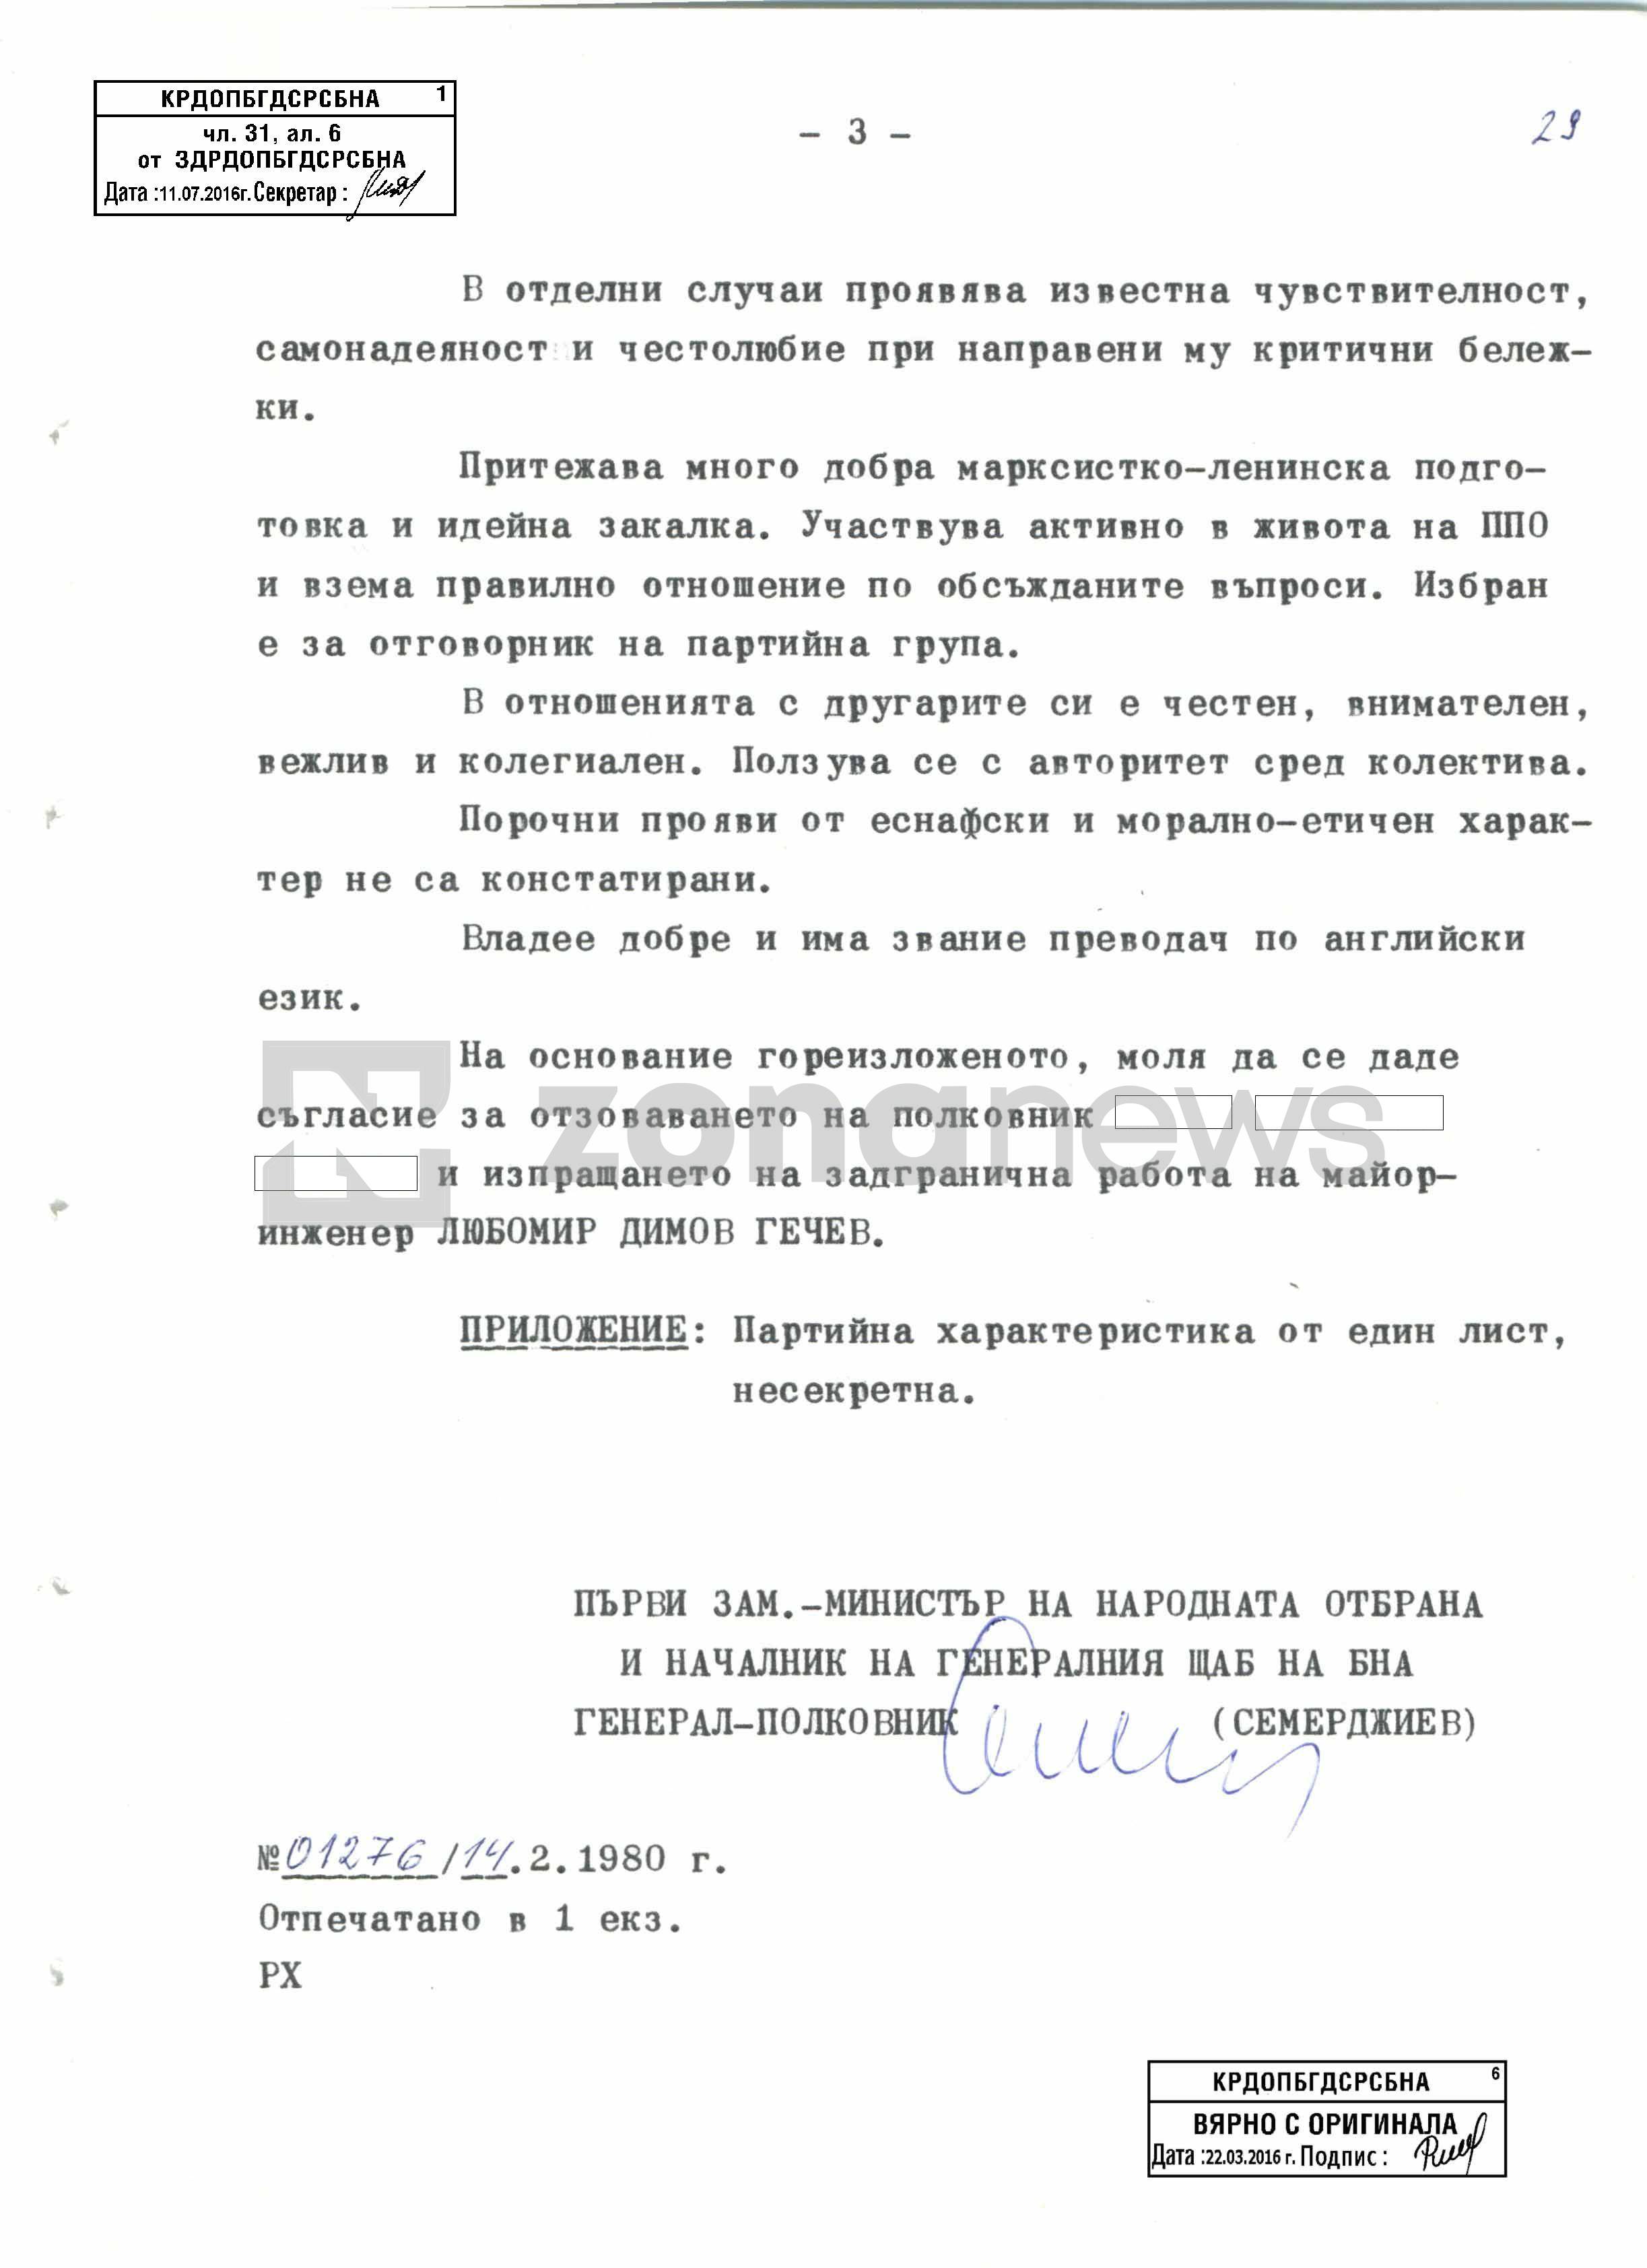 Предложението за изпращането на майор Любомир Гечев на задгранична работа като старши помощник военен аташе във Вашингтон 